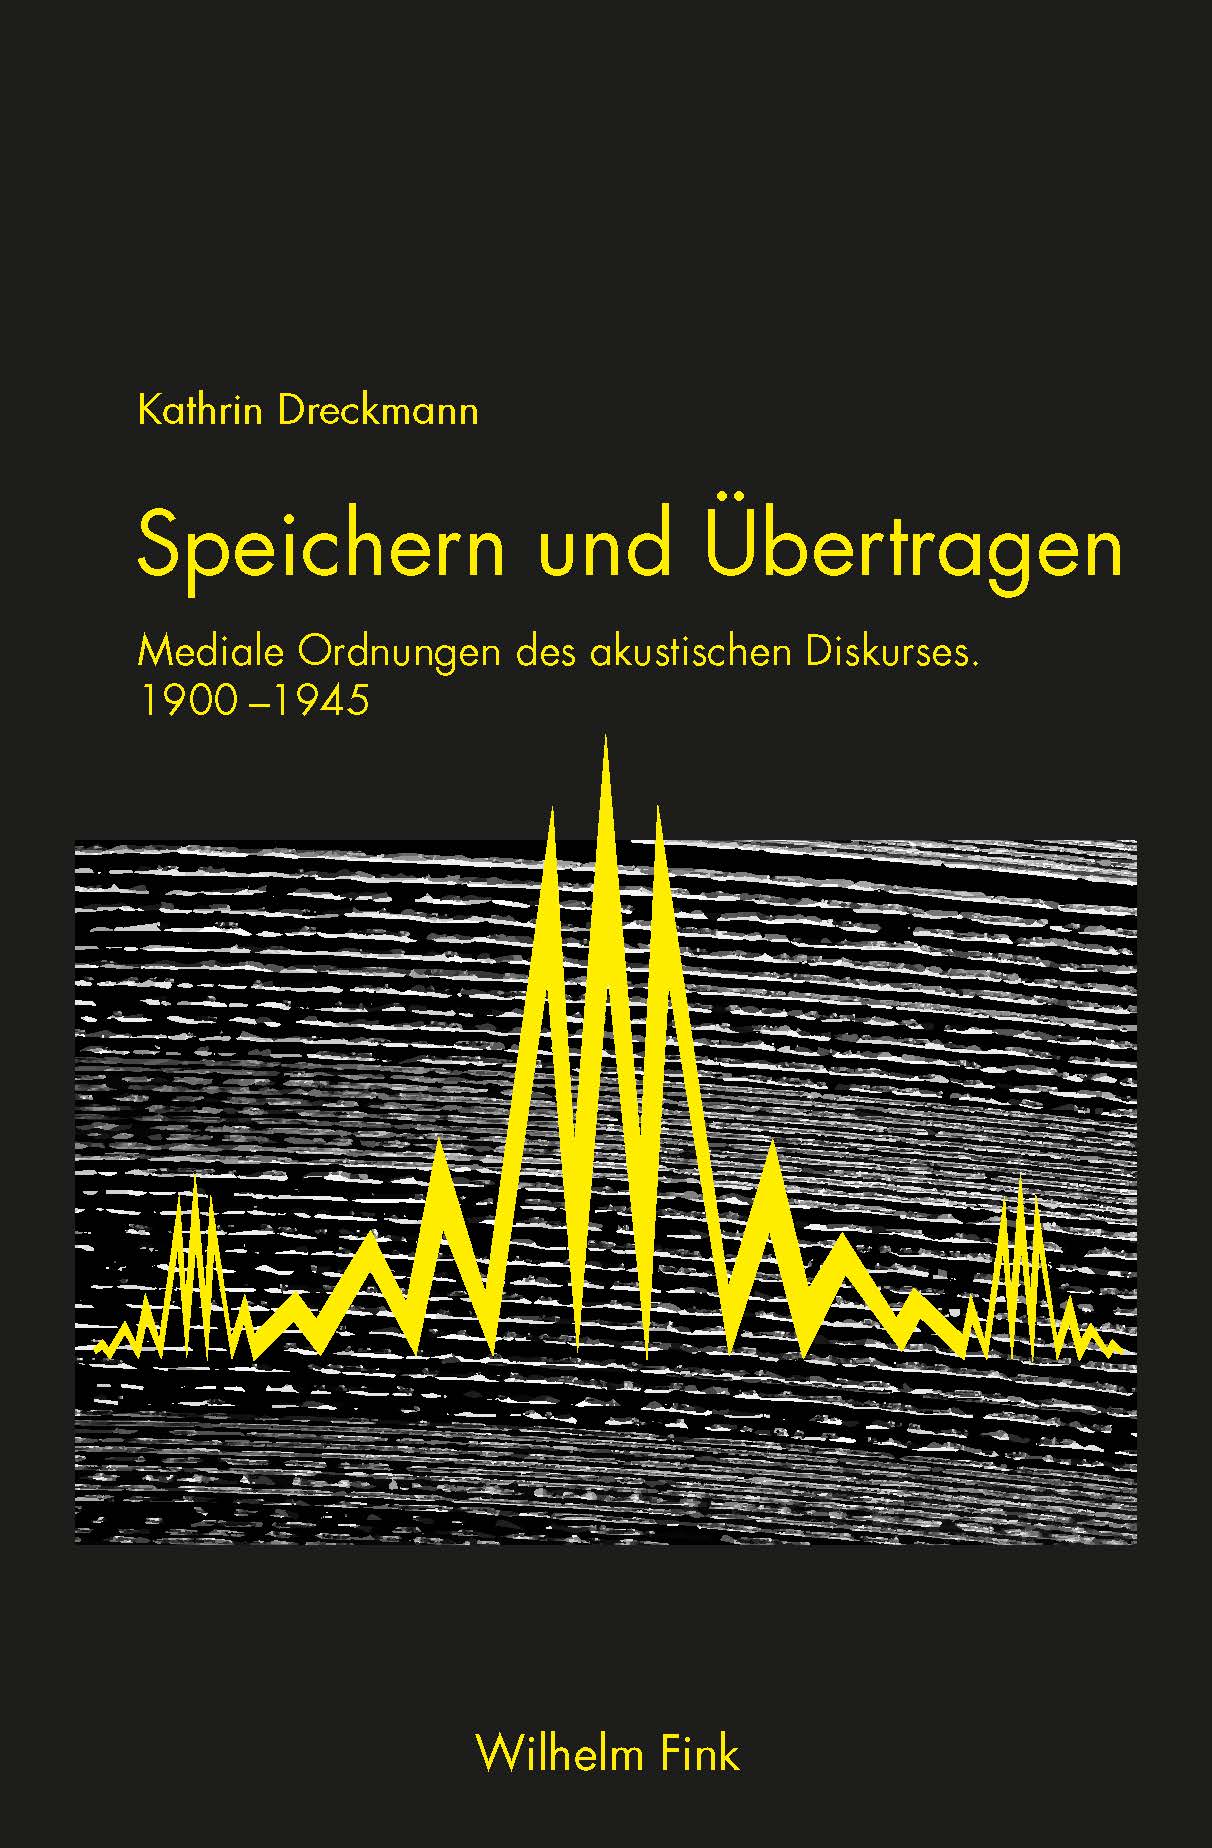 Kathrin Dreckmann: Speichern und Übertragen